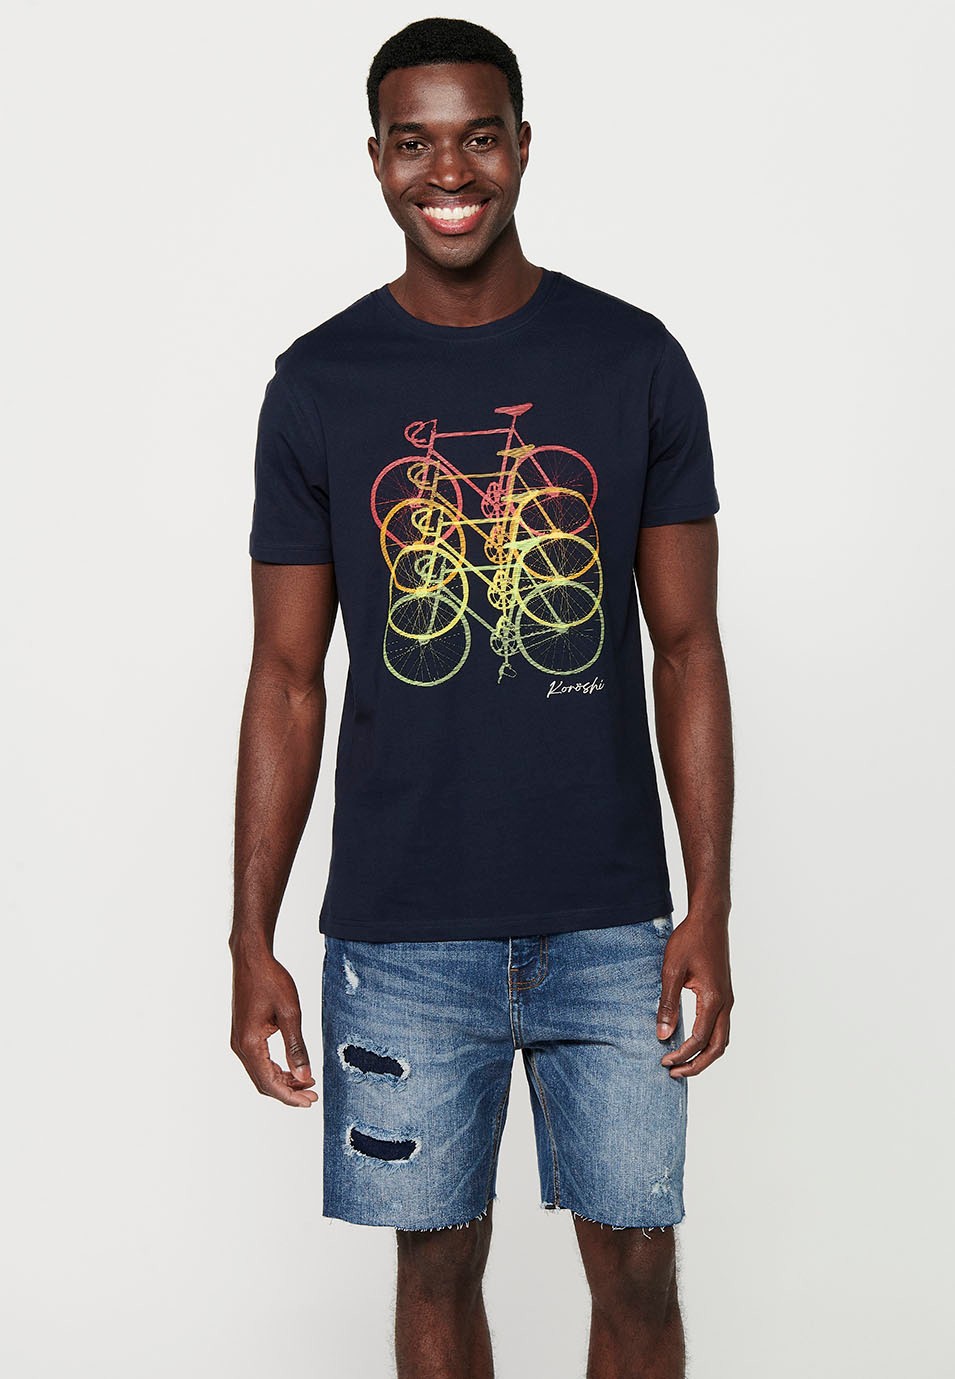 T-shirt en coton à manches courtes avec imprimé vélo sur le devant, coloris marine pour homme 2